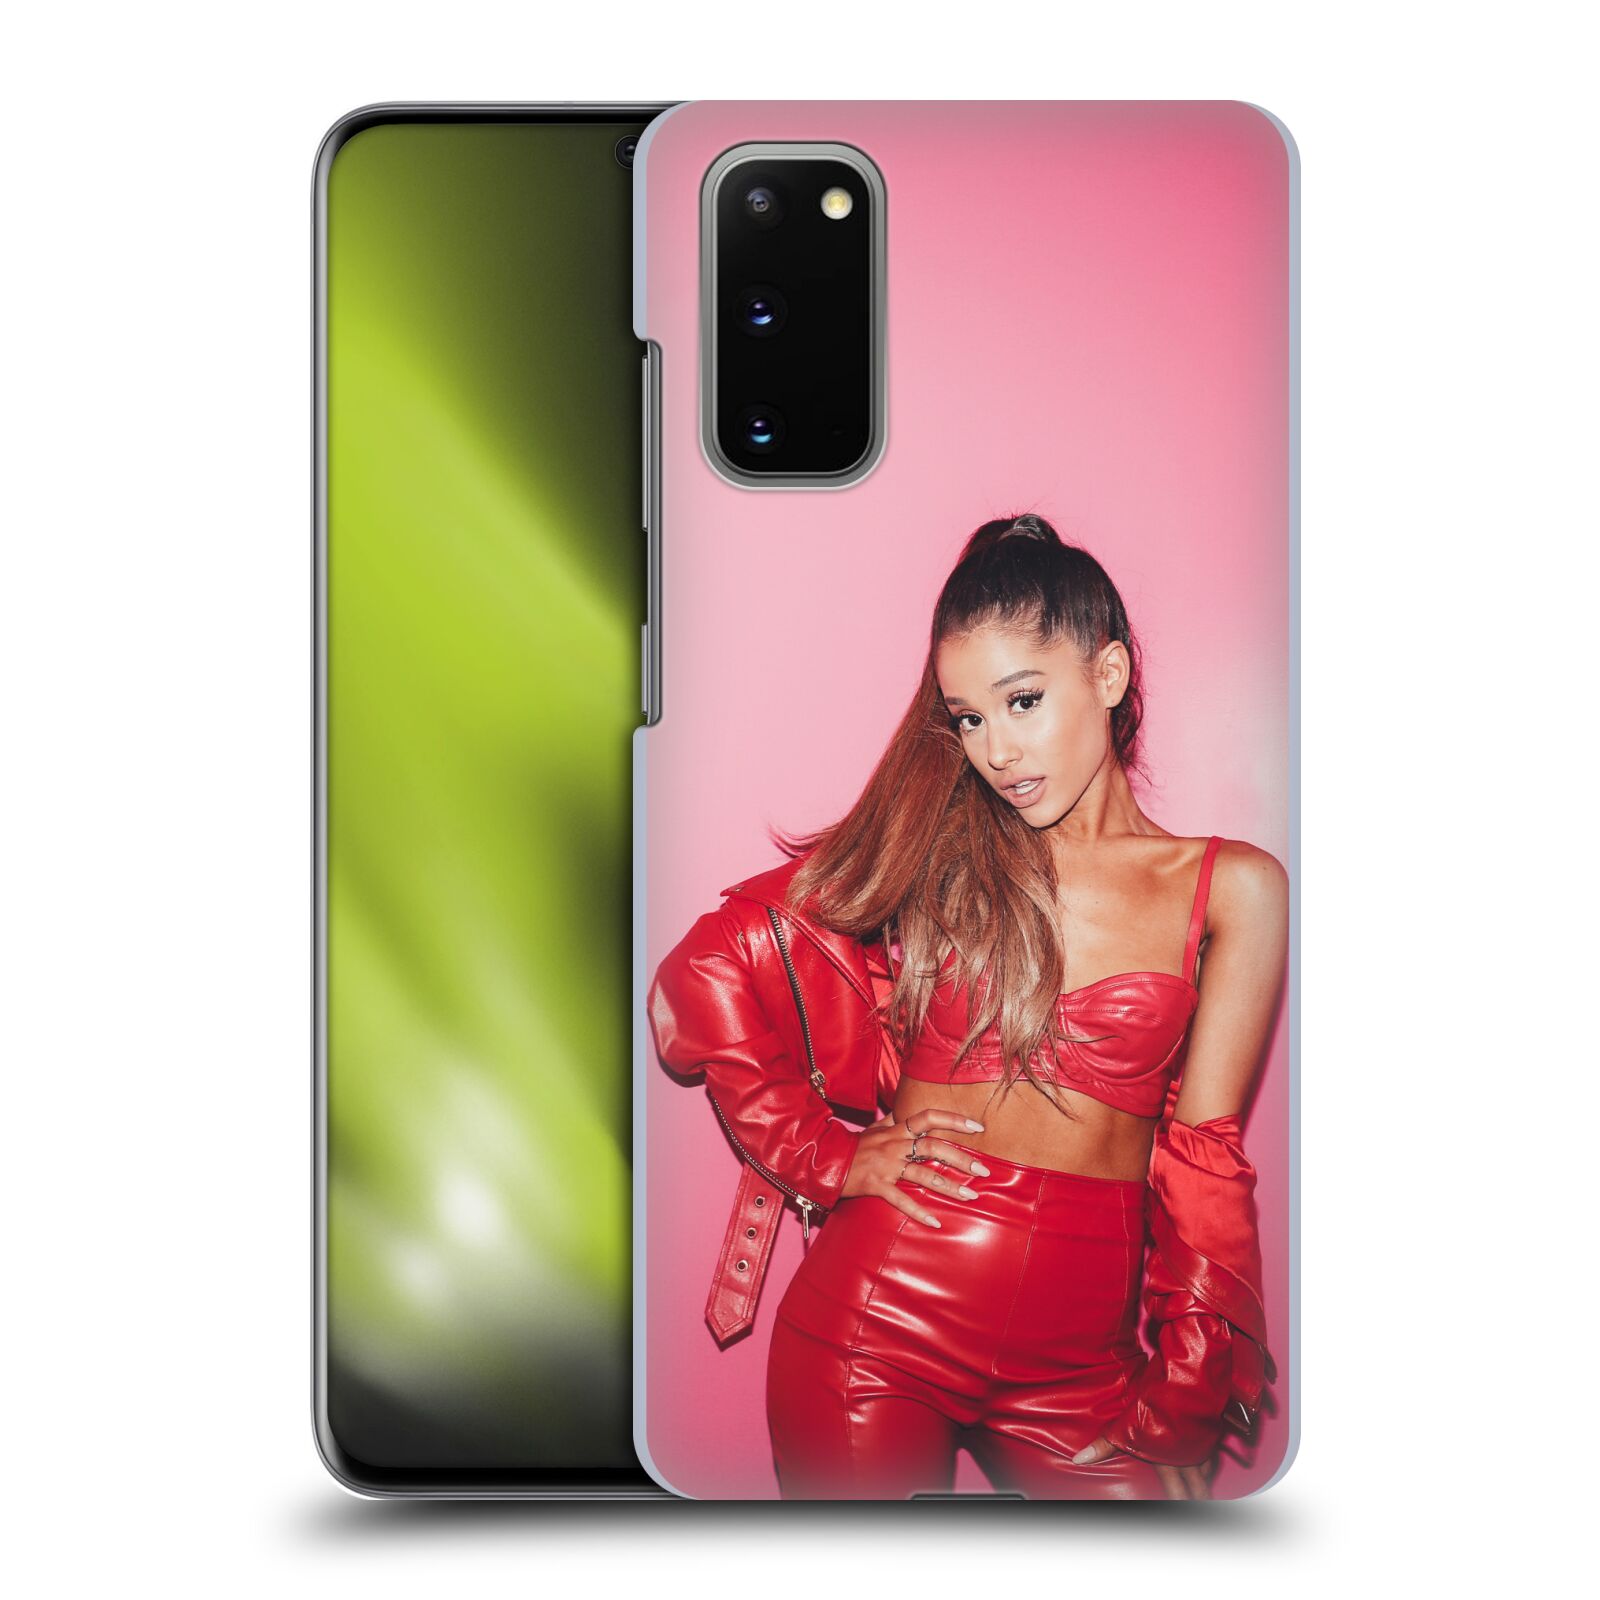 Pouzdro na mobil Samsung Galaxy S20 - HEAD CASE - zpěvačka Ariana Grande Dangerous Woman růžová